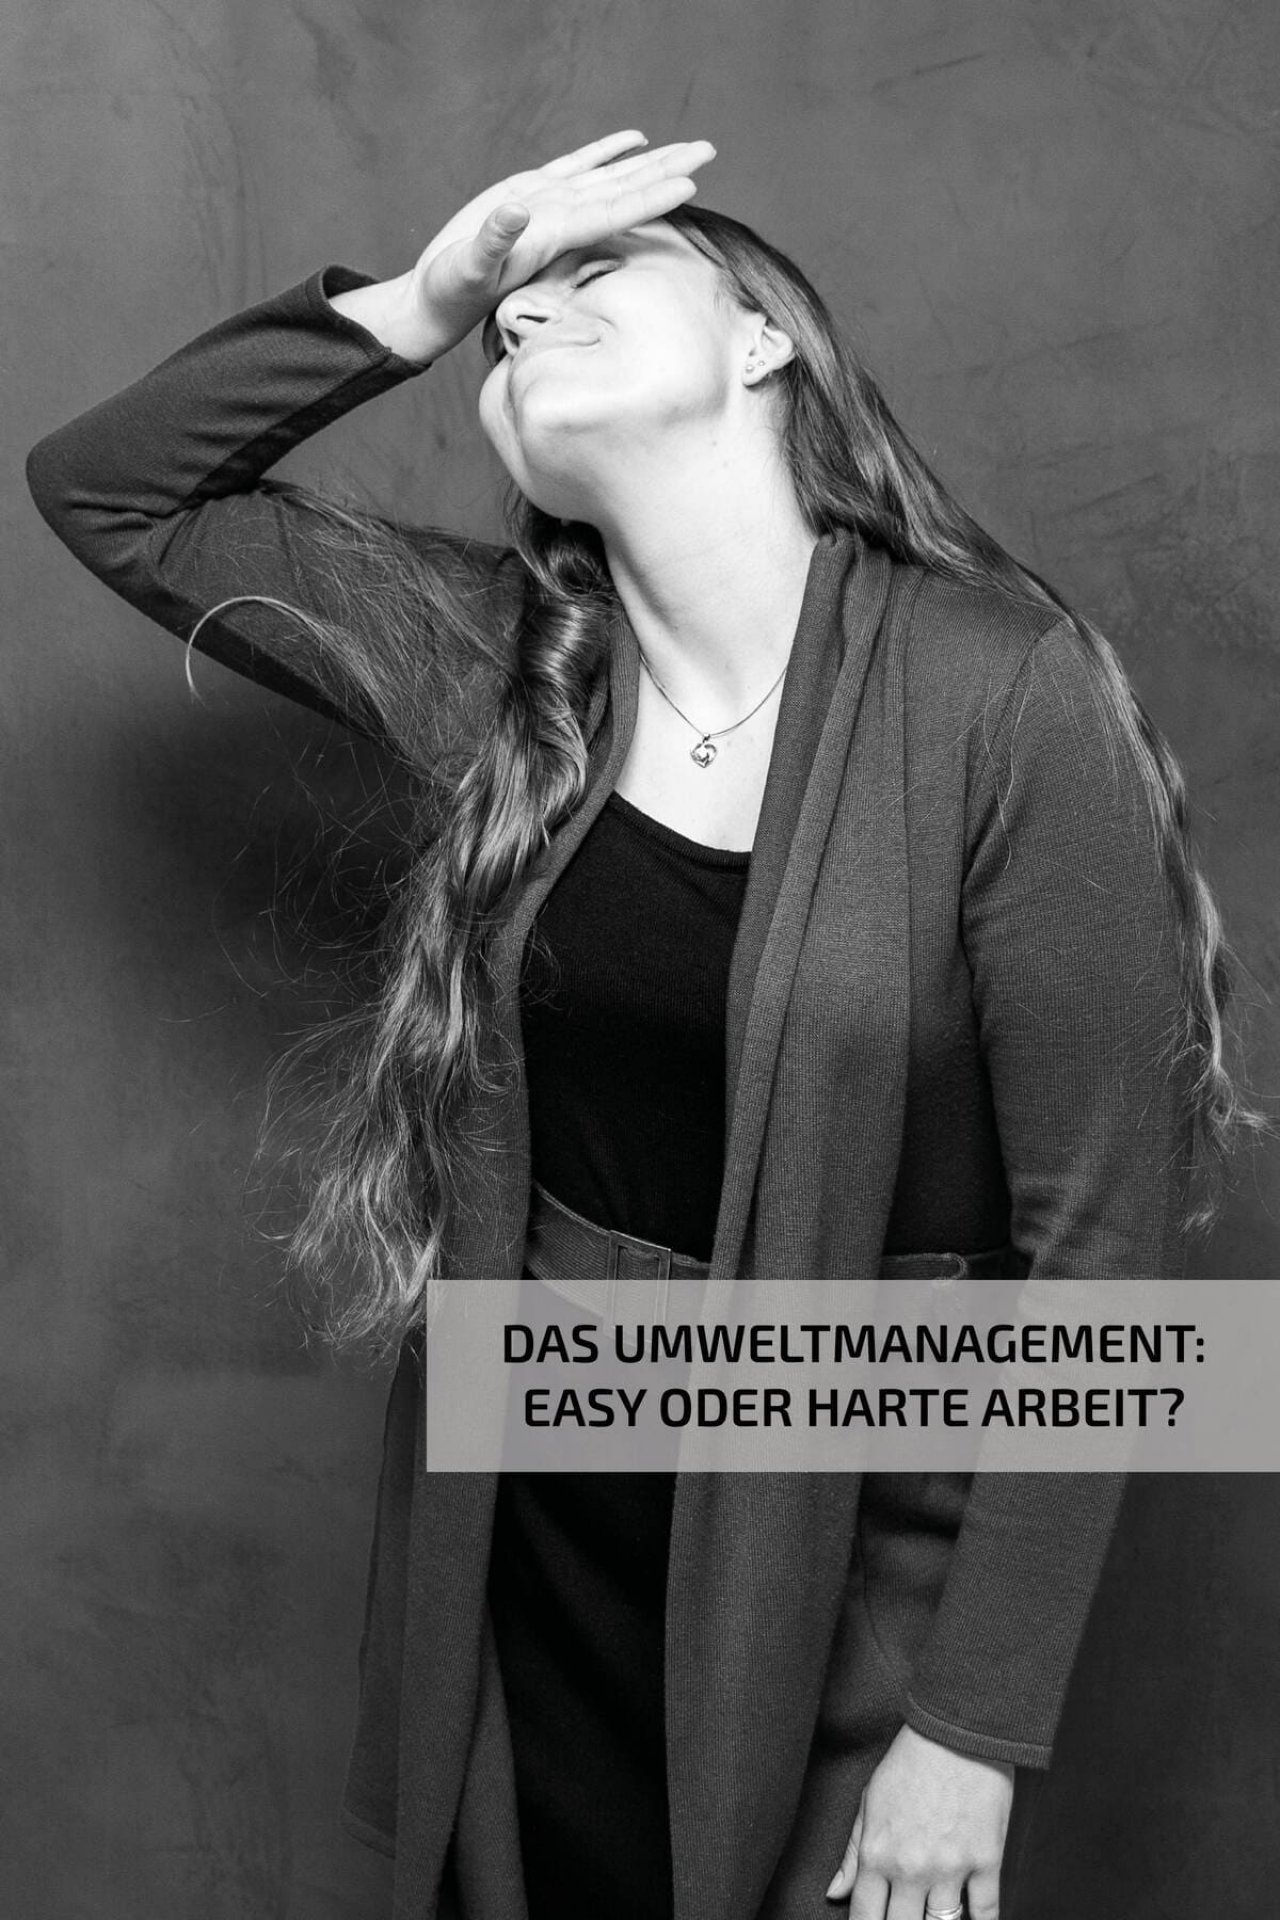 Umweltmanagement – Janina Rötzer im Interview ohne Worte – Nutz GmbH News